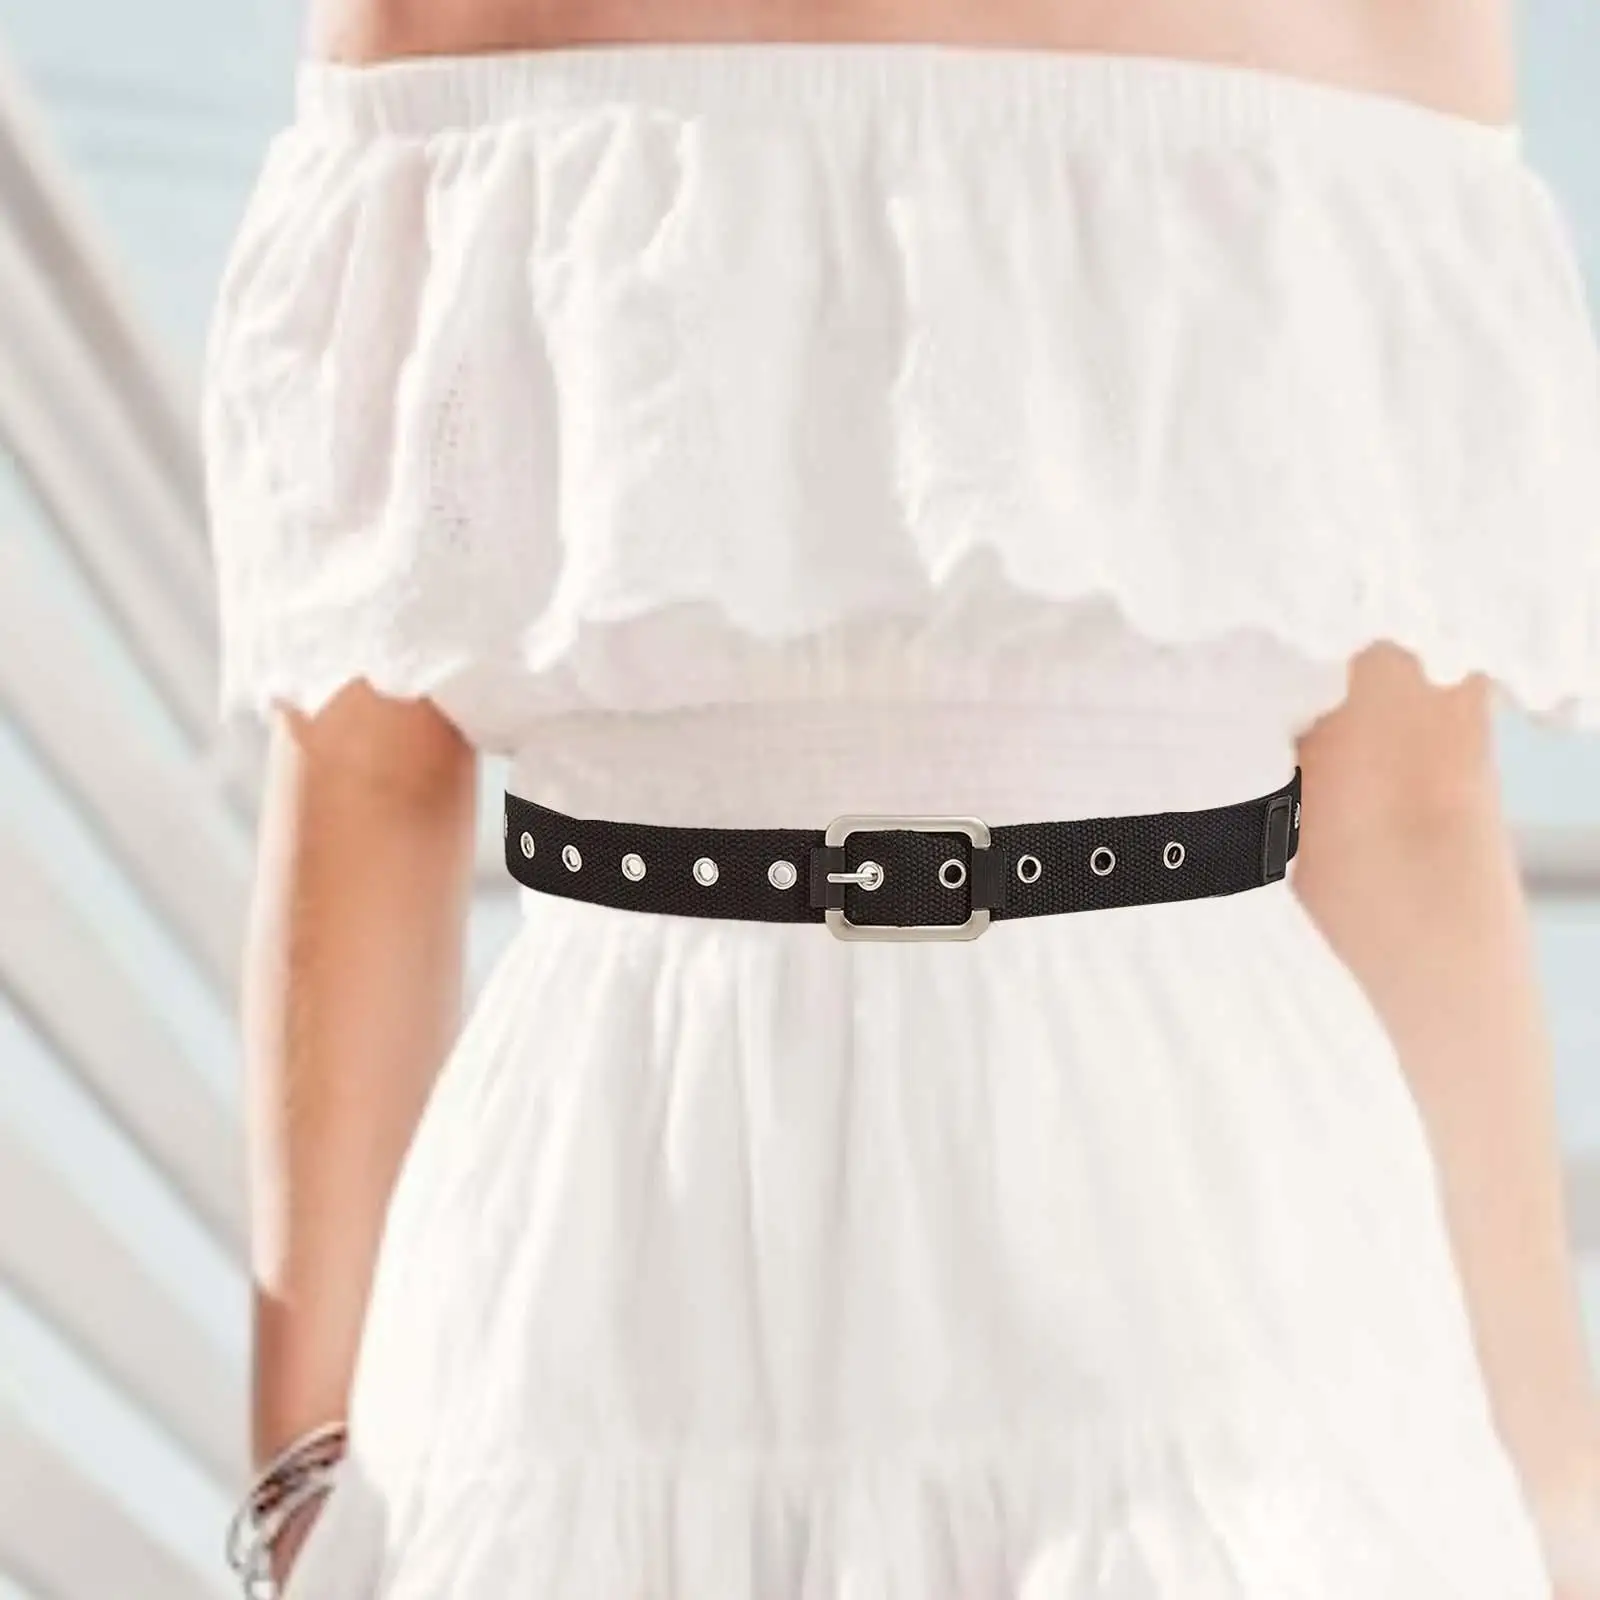 

Unisex Waist Belt Single Eyelet Fashion Decorative Adjustable Pin Buckle Belt